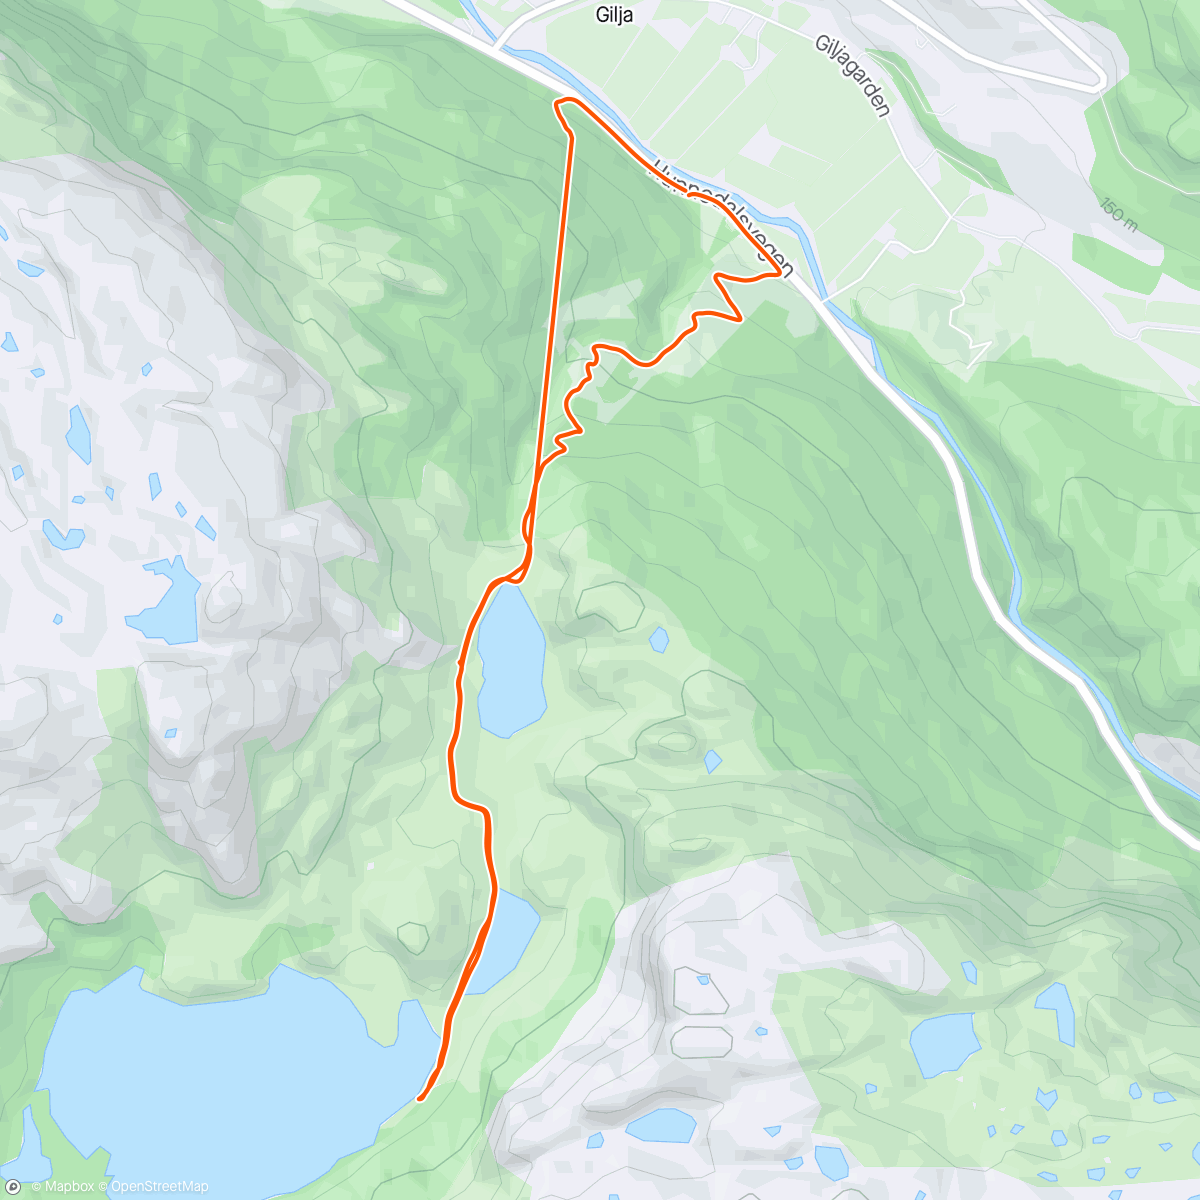 Map of the activity, Giljaalpene. Anasløa og Djupavassbu. Tulla med klokkå på nerturen